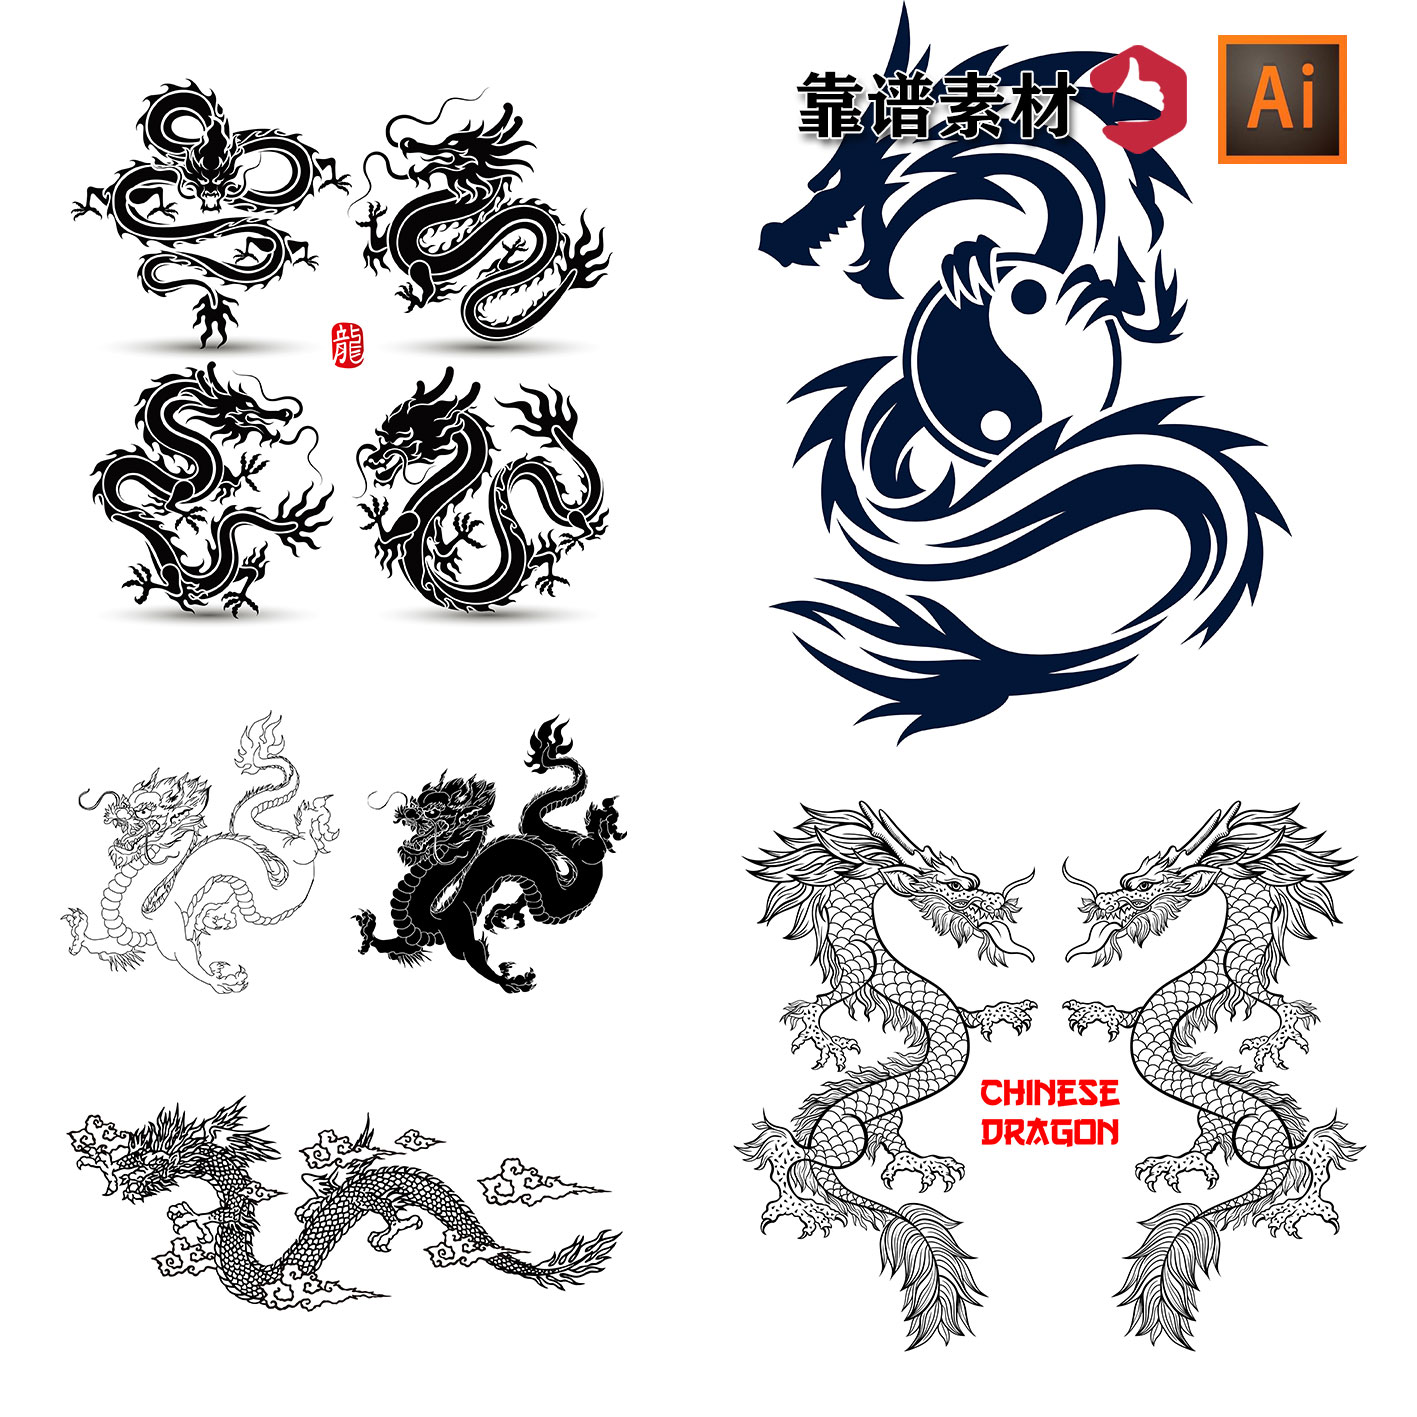 中国龙图腾黑白剪影插画AI矢量设计素材